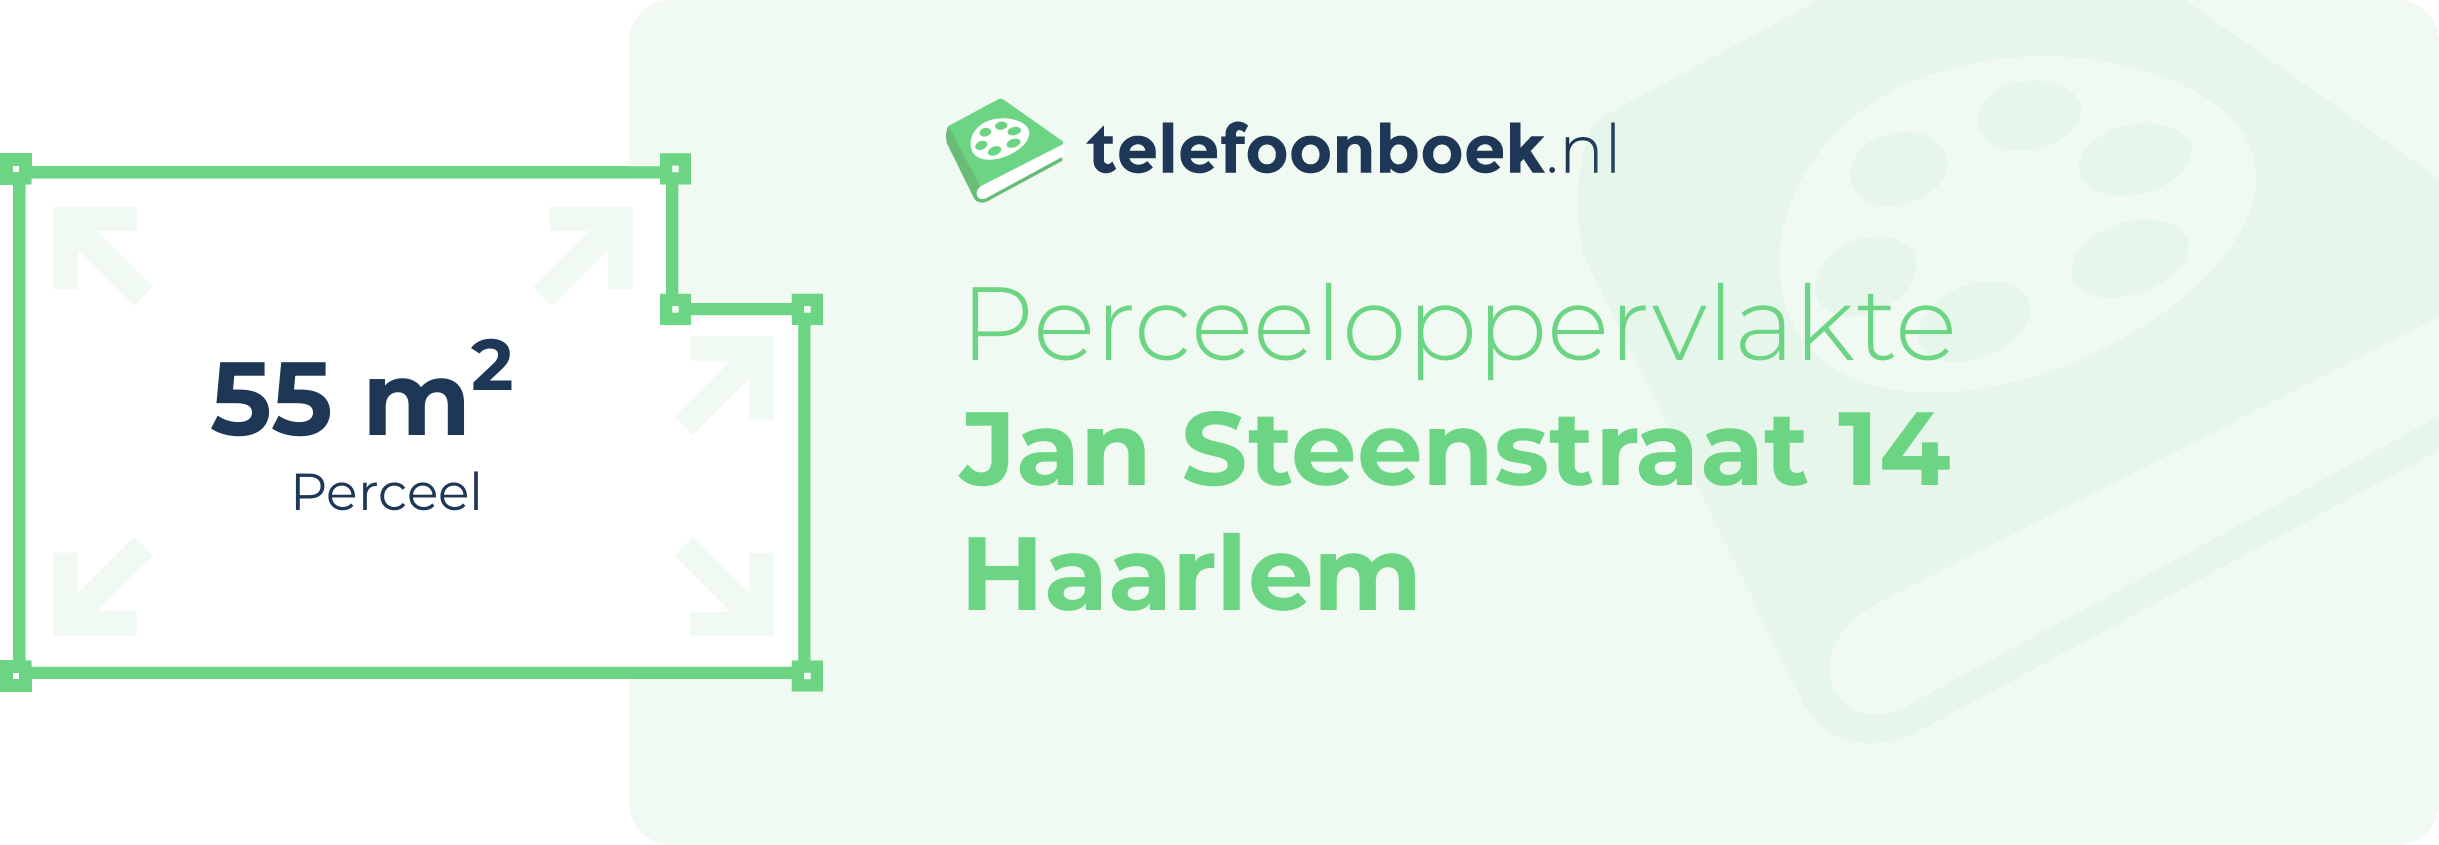 Perceeloppervlakte Jan Steenstraat 14 Haarlem